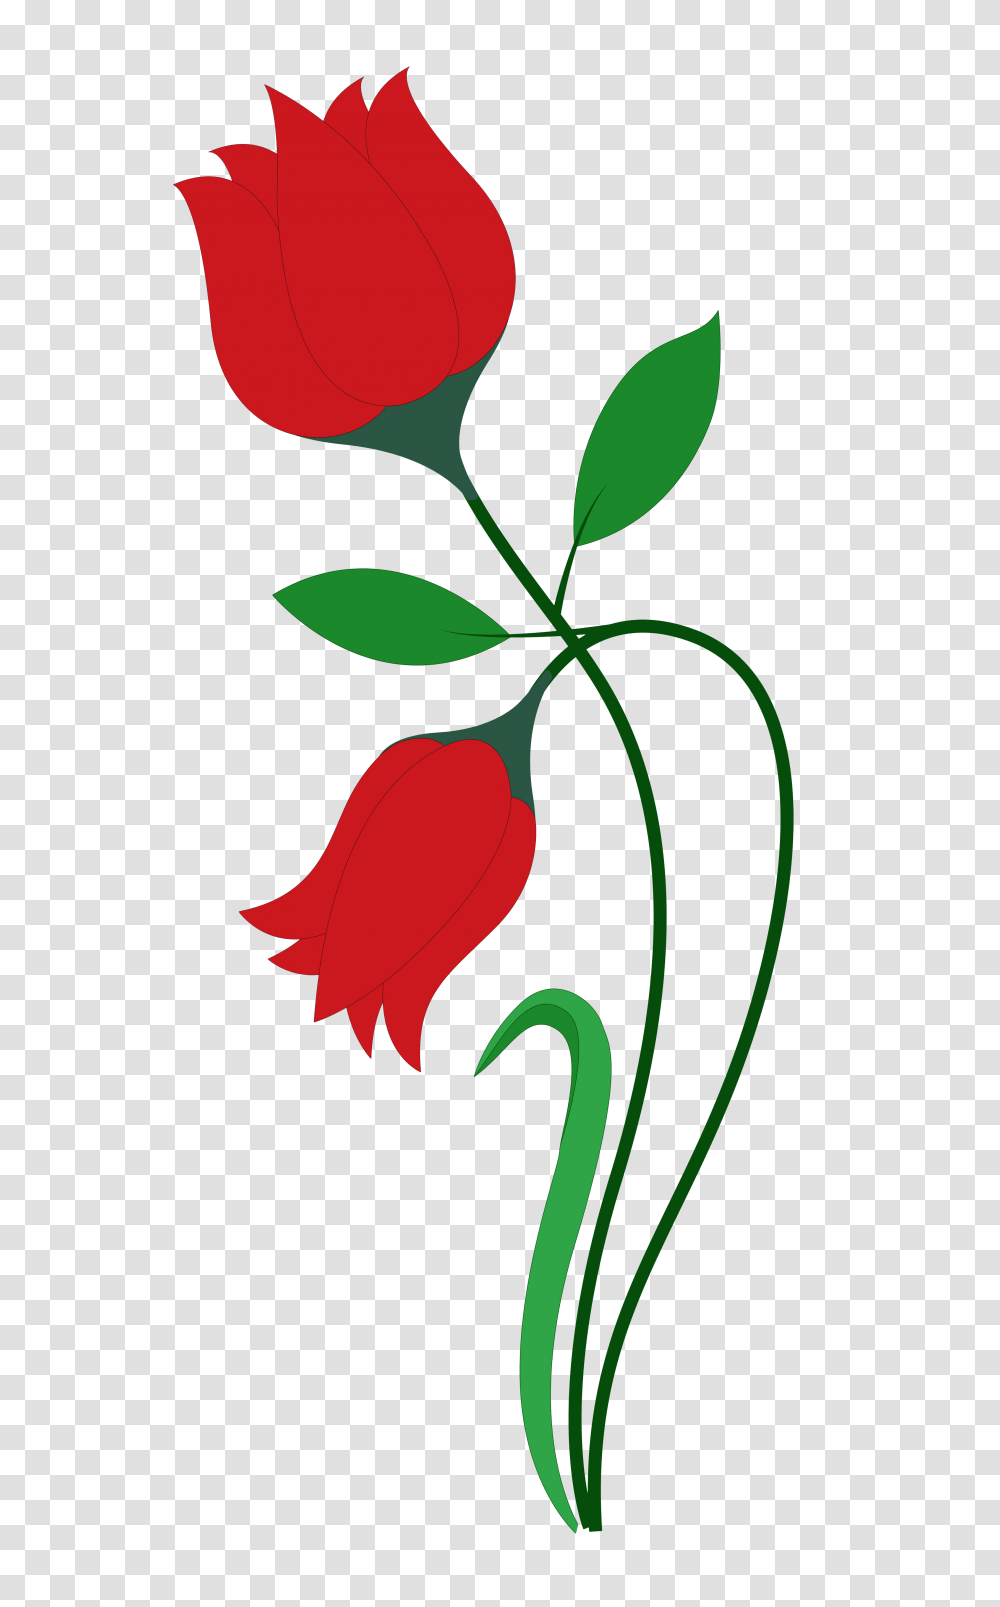 Rose Flower Vector Image Rose Flower Design Art, Plant, Blossom, Vase, Jar Transparent Png